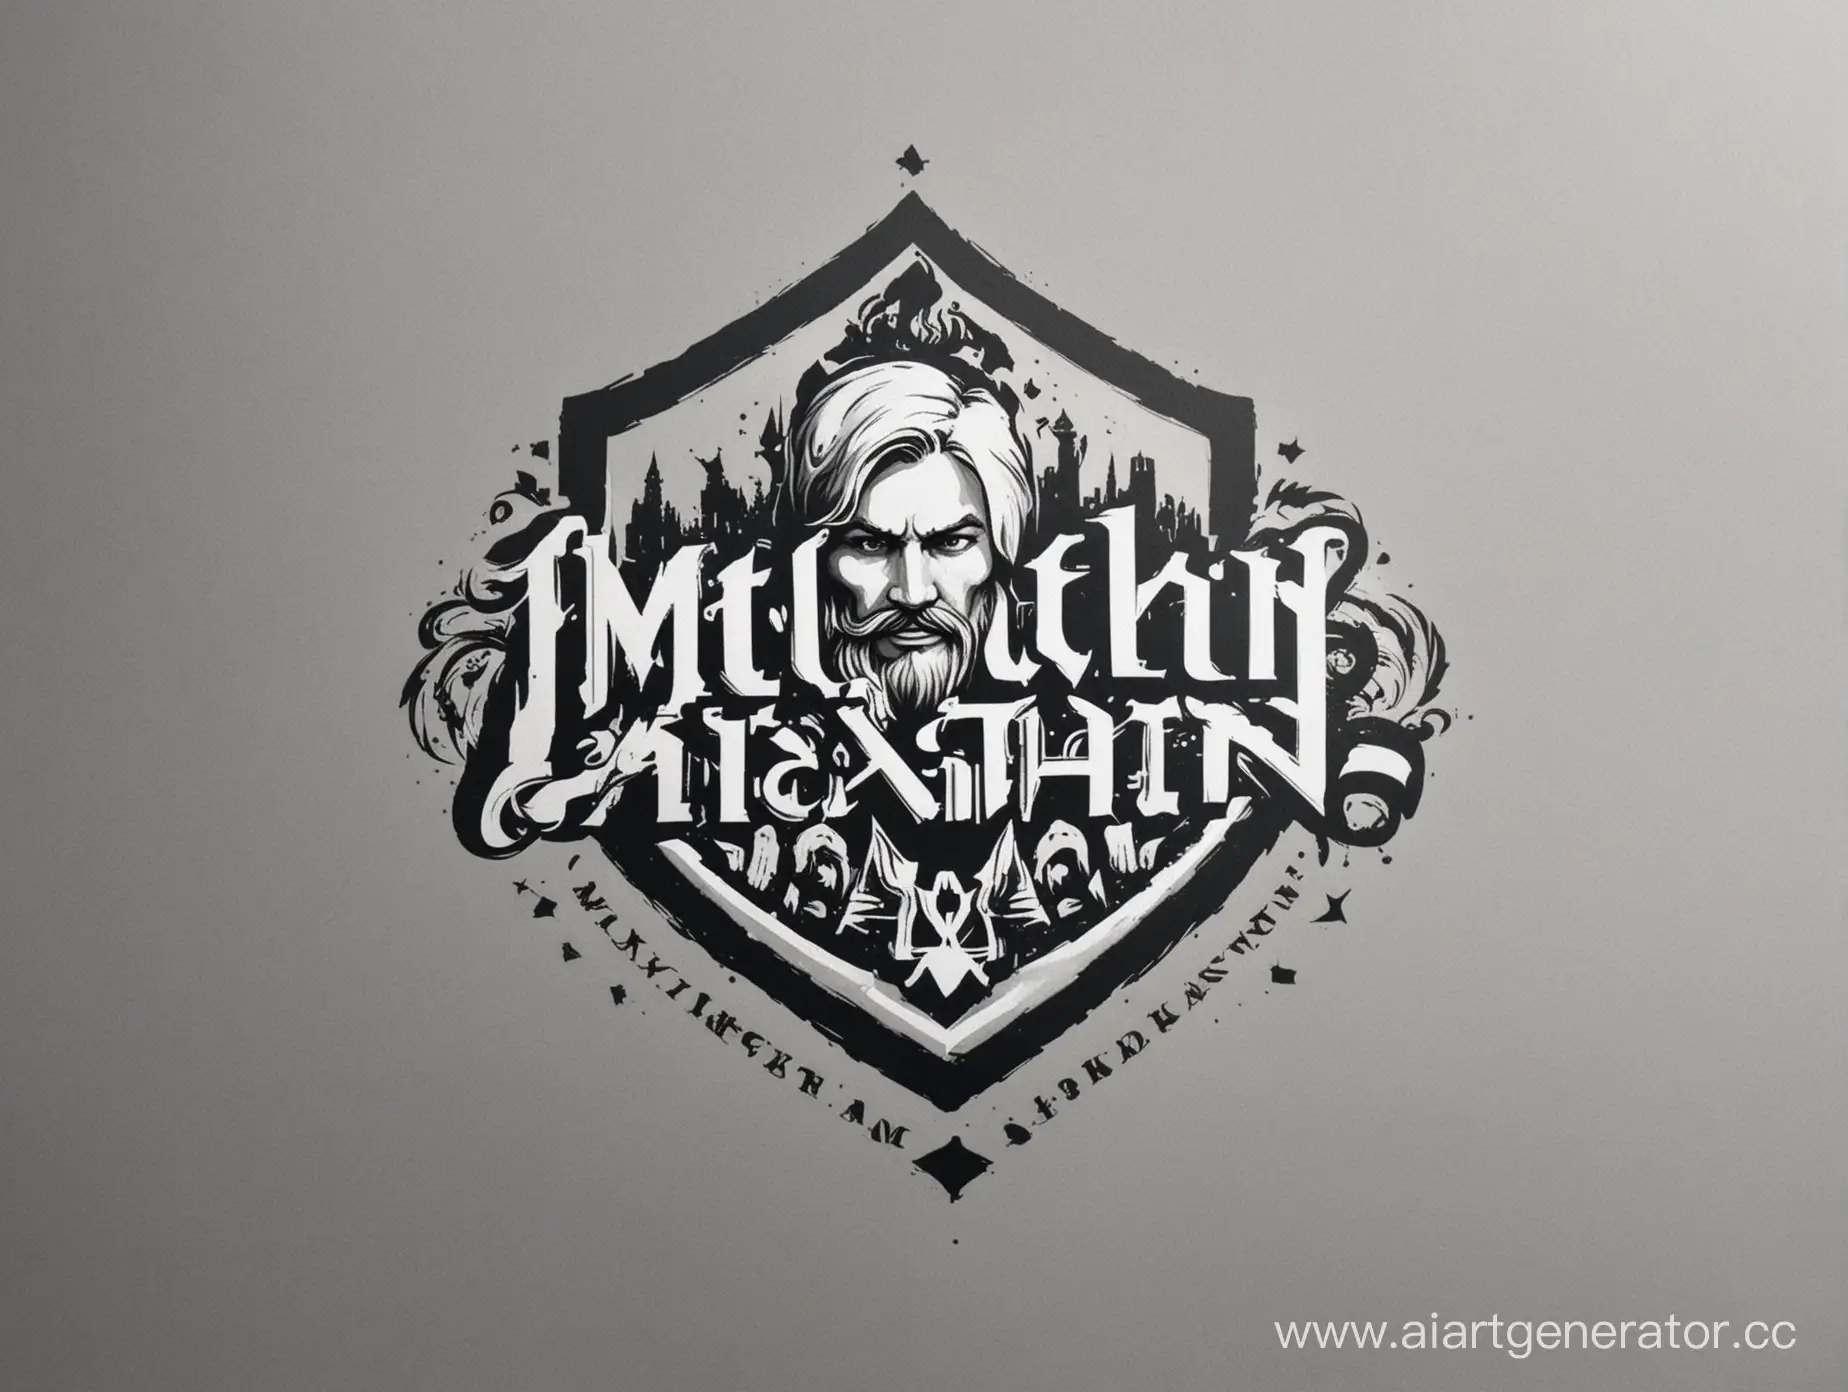 Сгенерируй логотип для личного бренда Матюхин Александр с никнеймом Laybrus он занимается продвижением людей и продвижением